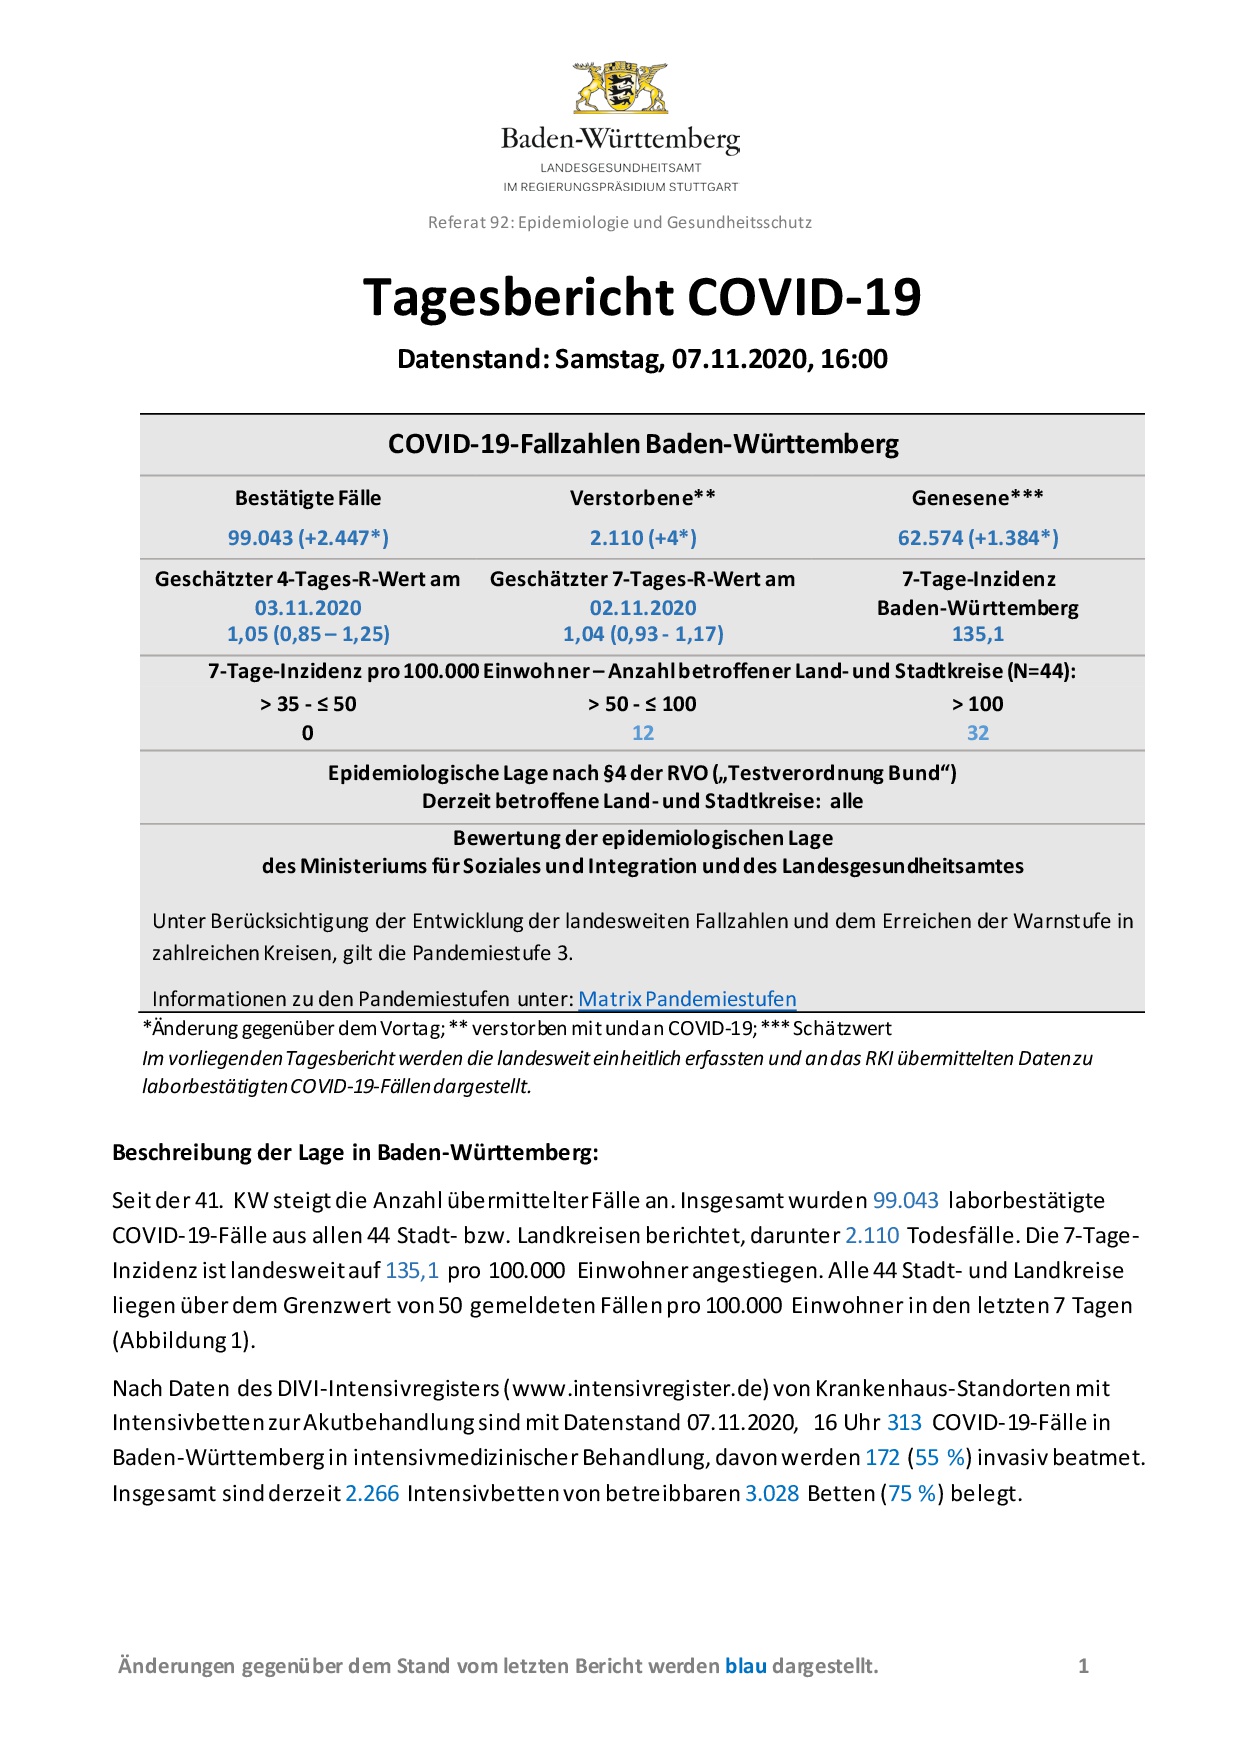 COVID-19 Tagesbericht (07.11.2020) des Landesgesundheitsamts Baden-Württemberg – (ausführlicher)